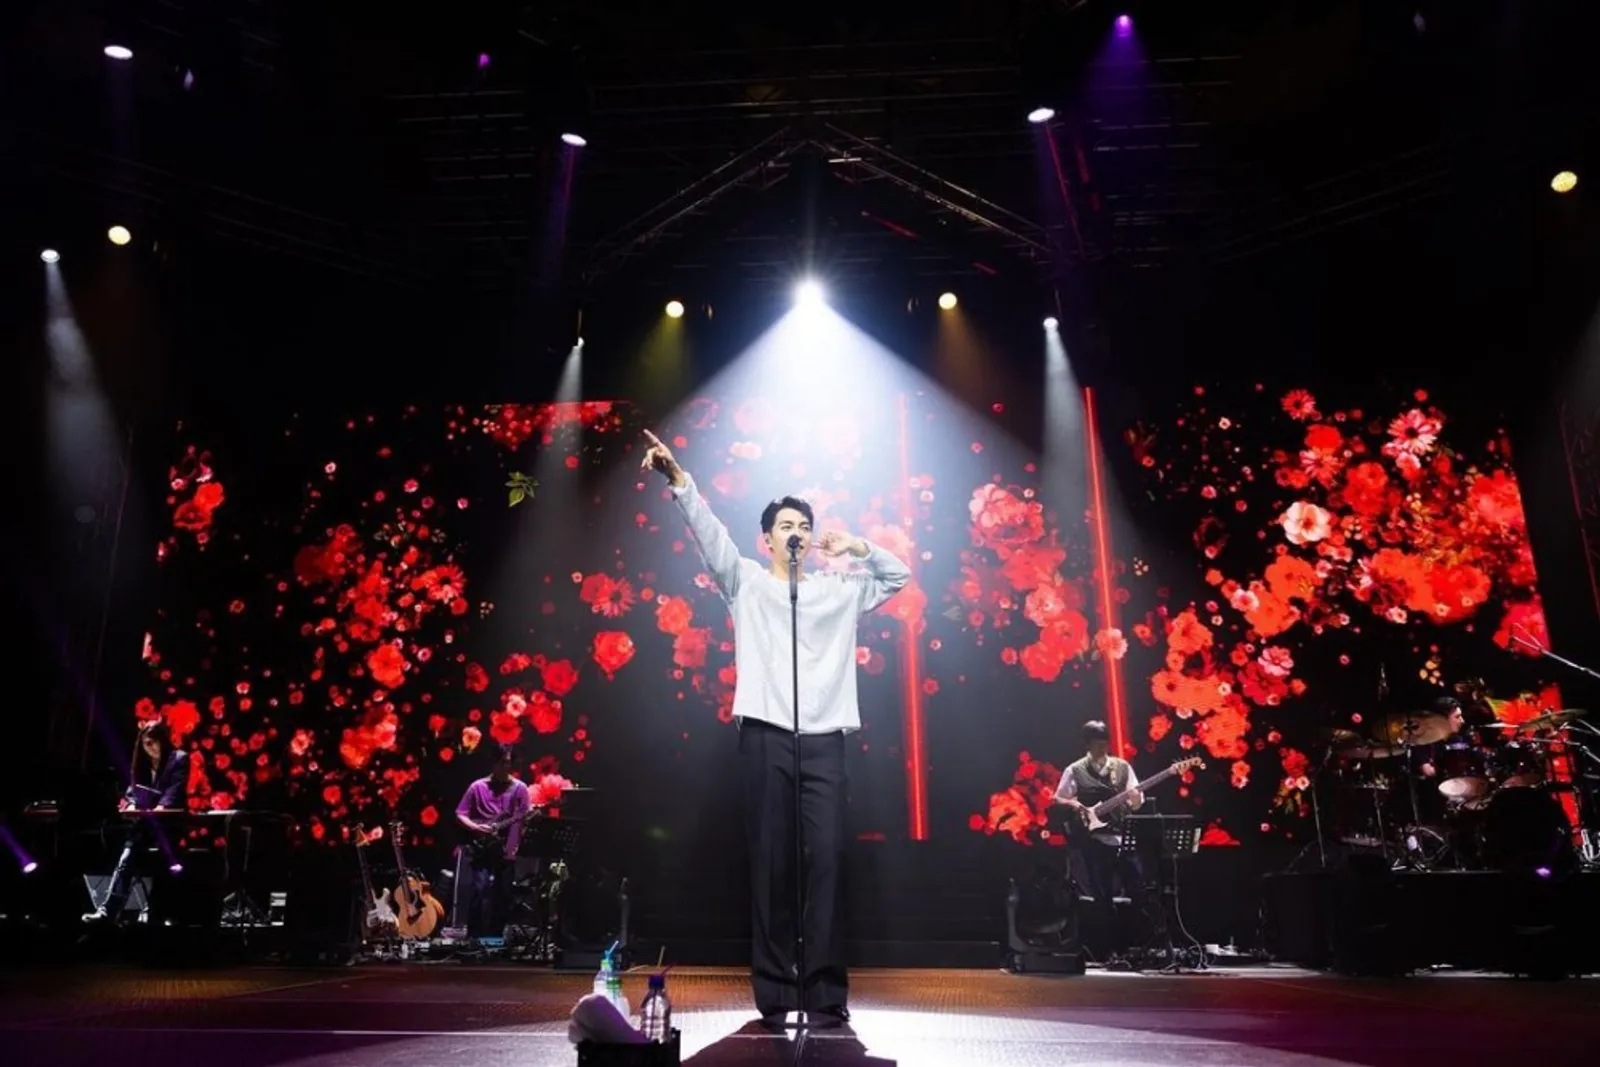 Citra Memburuk, Lee Seung Gi Panen Kontroversi saat Konser di Amerika